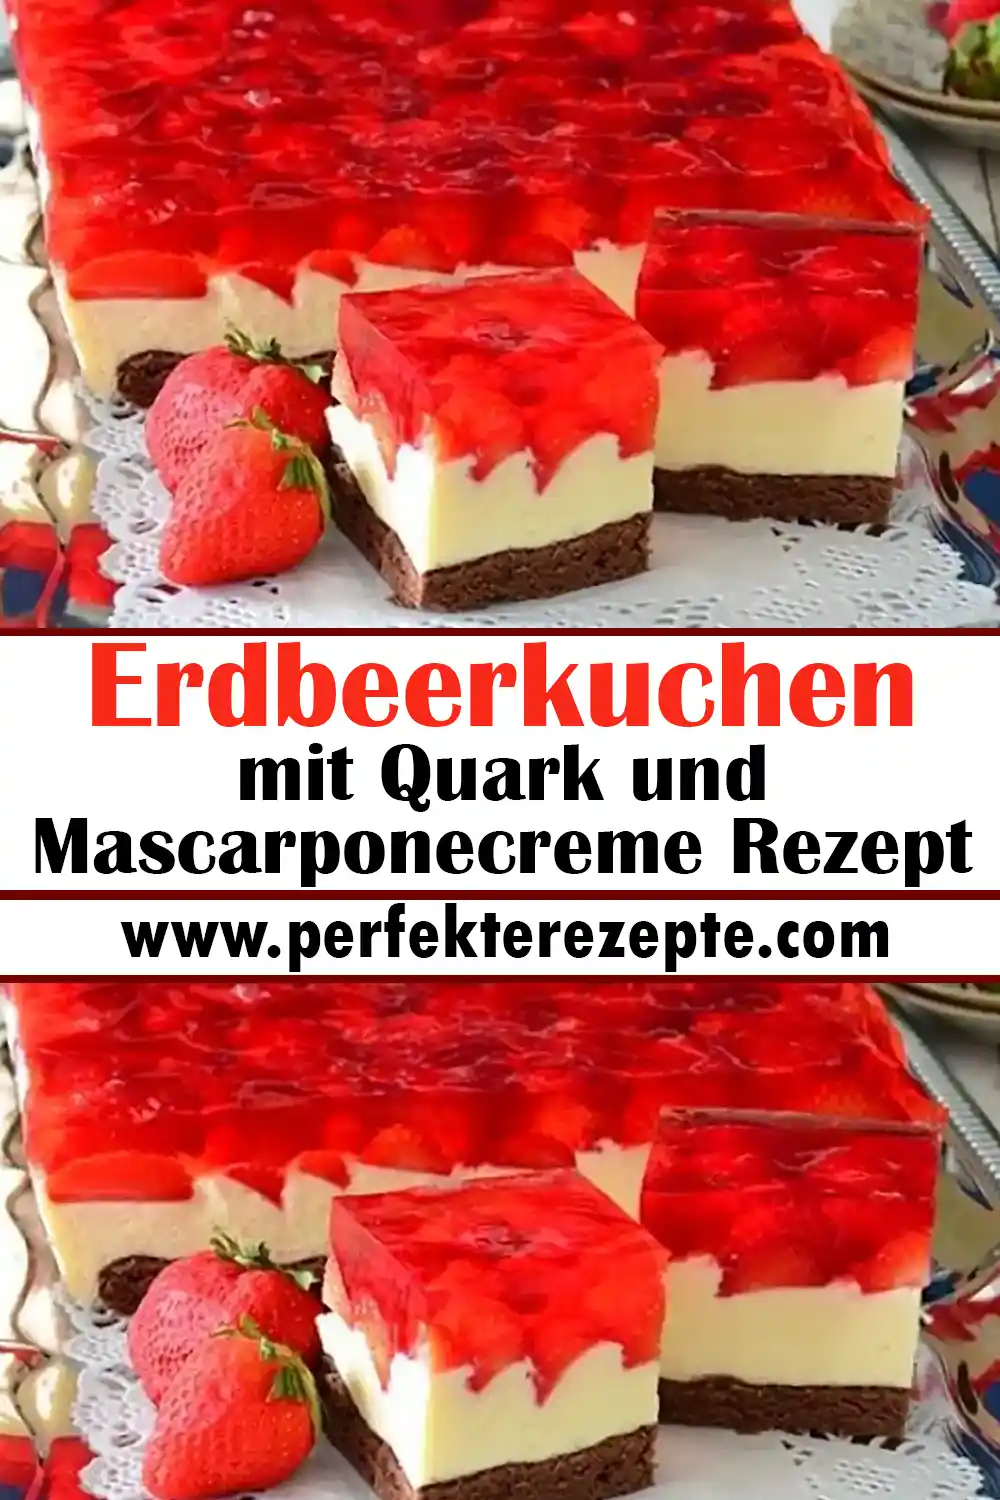 Erdbeerkuchen mit Quark und Mascarponecreme Rezept